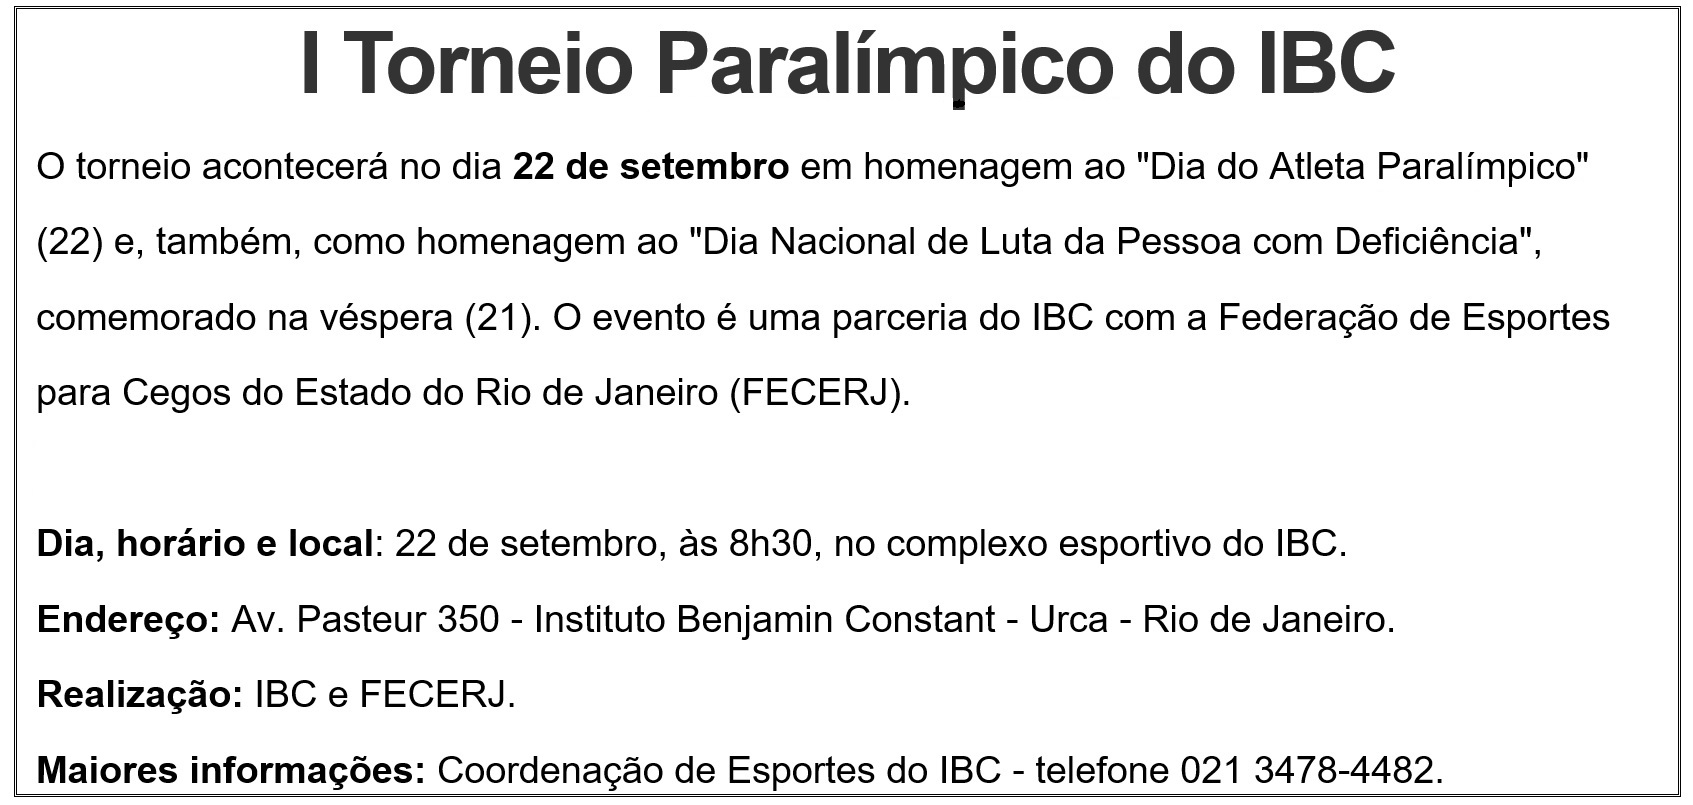 I Torneio Paralímpico do IBC, dia 22 de setembro, início às 8 horas e 30 minutos, no complexo esportivo do IBC, na Avenida Pasteur número 350.